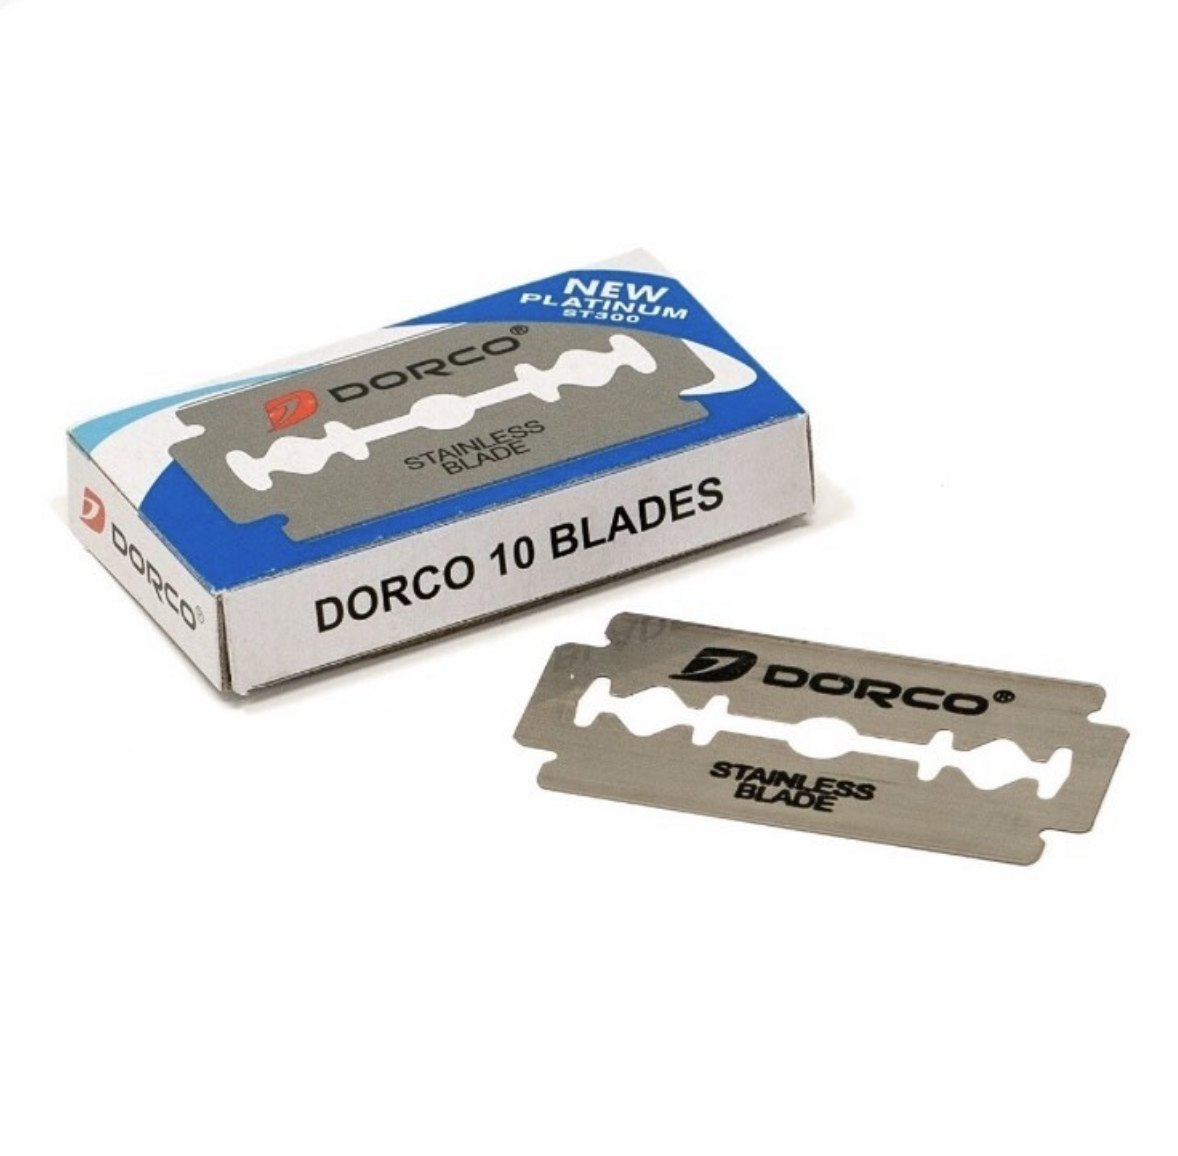 Лезвия для т станков купить. Dorco лезвия Platinum St-300 (кратно 10 уп. По 10 лезвий). Dorco лезвия Platinum St-300. Dorco лезвия St-300 5 шт. Лезвия для т образных станков Dorco.